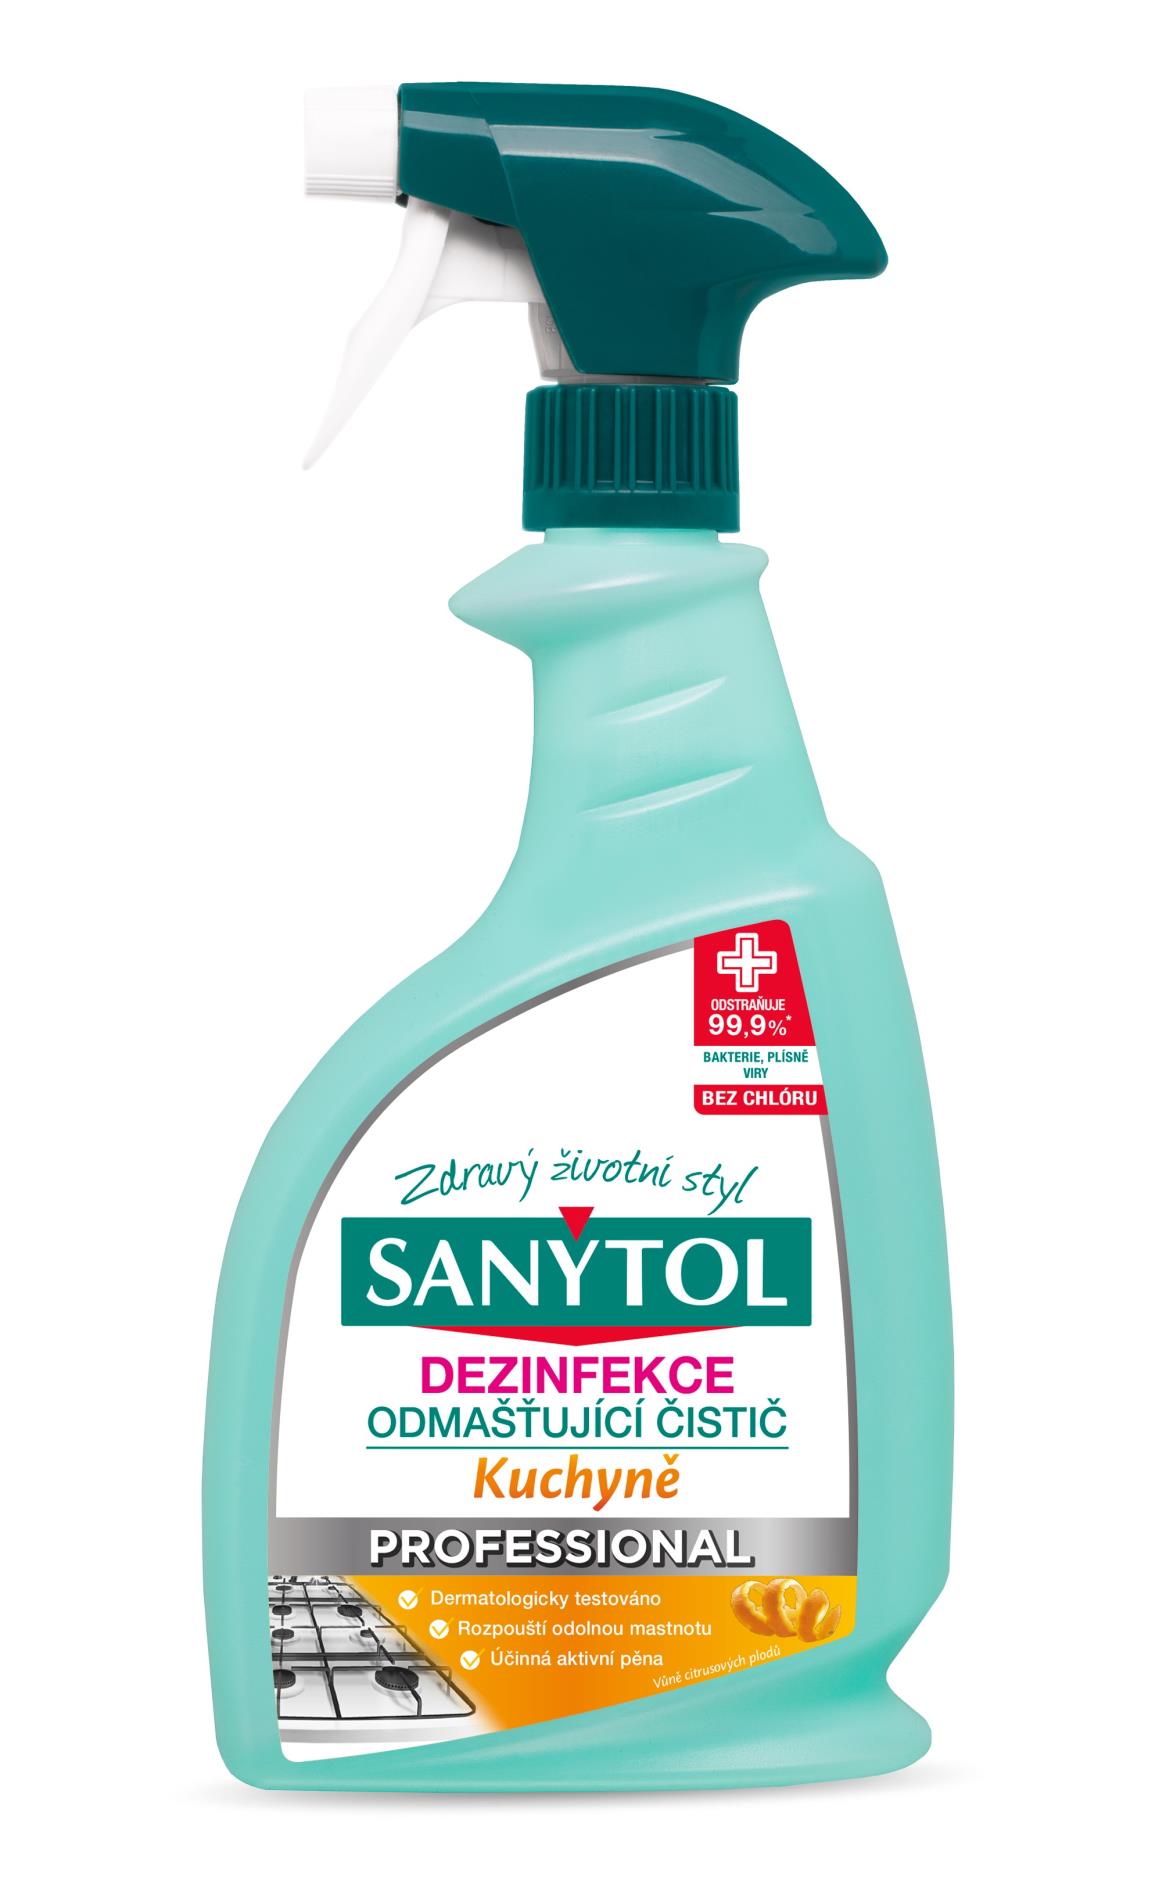 Sanytol Dezinfekční čistič na kuchyně Sanytol Professional - 750 ml